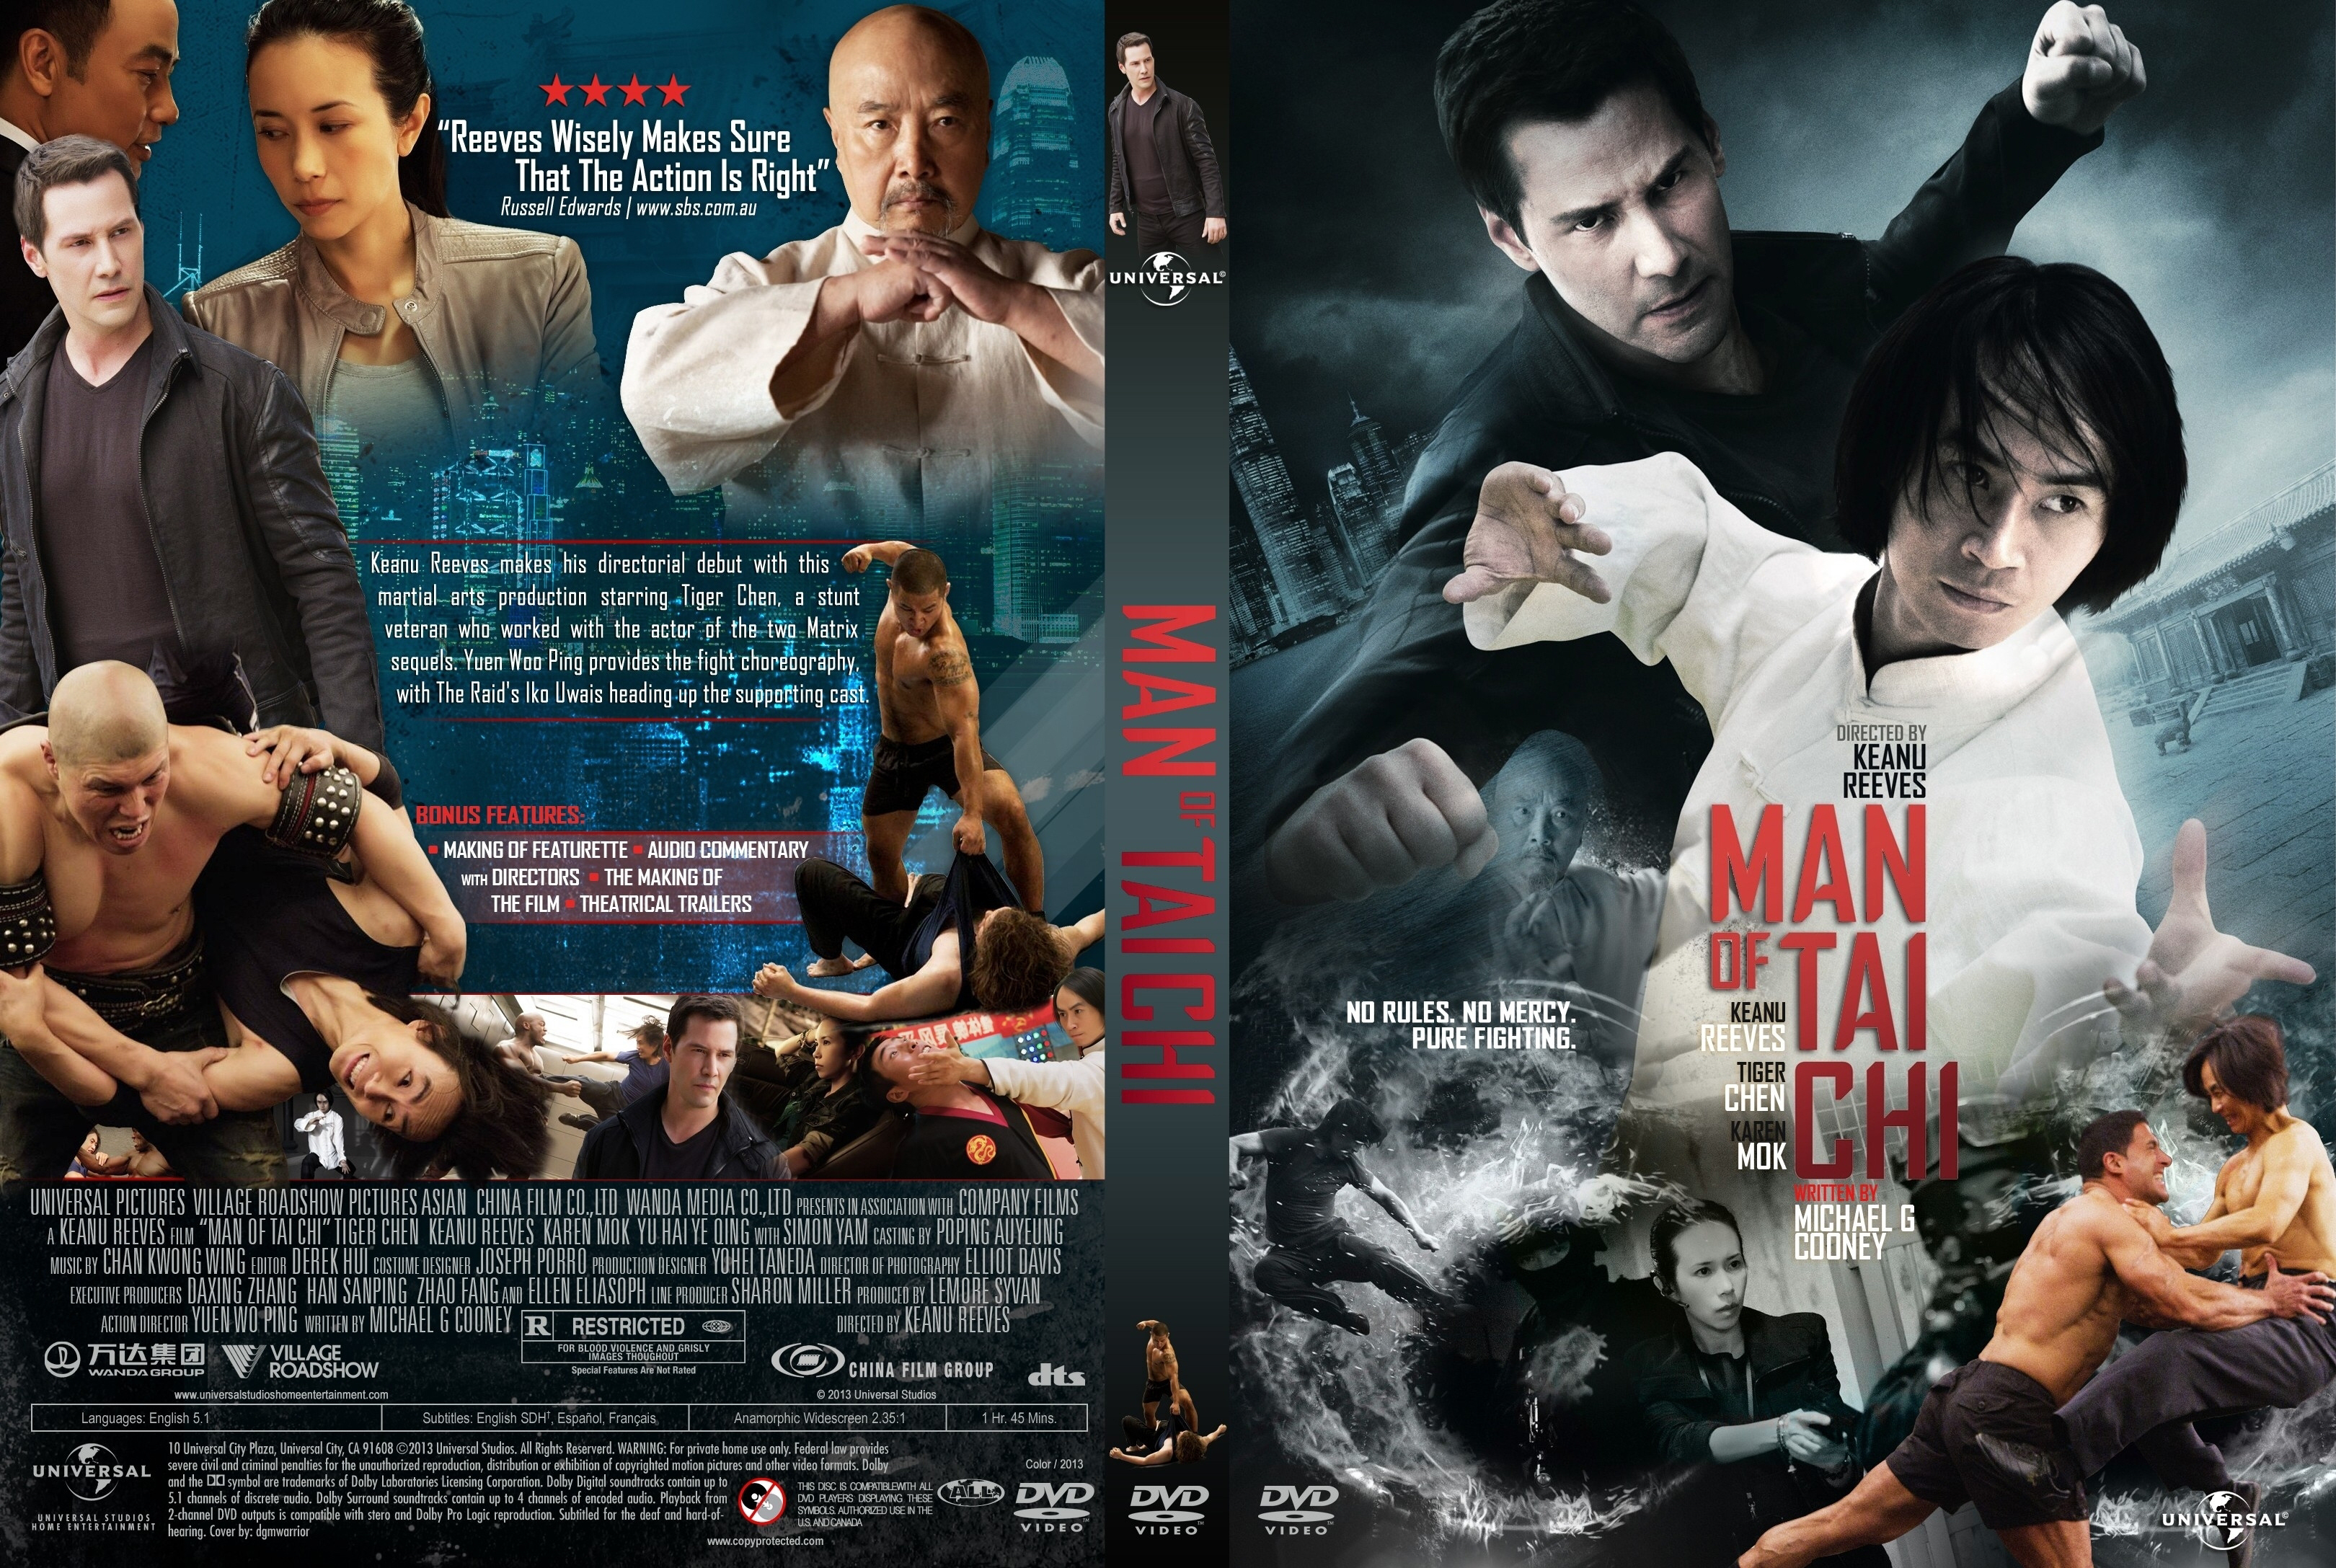 دانلود فیلم Man of Tai Chi 2013